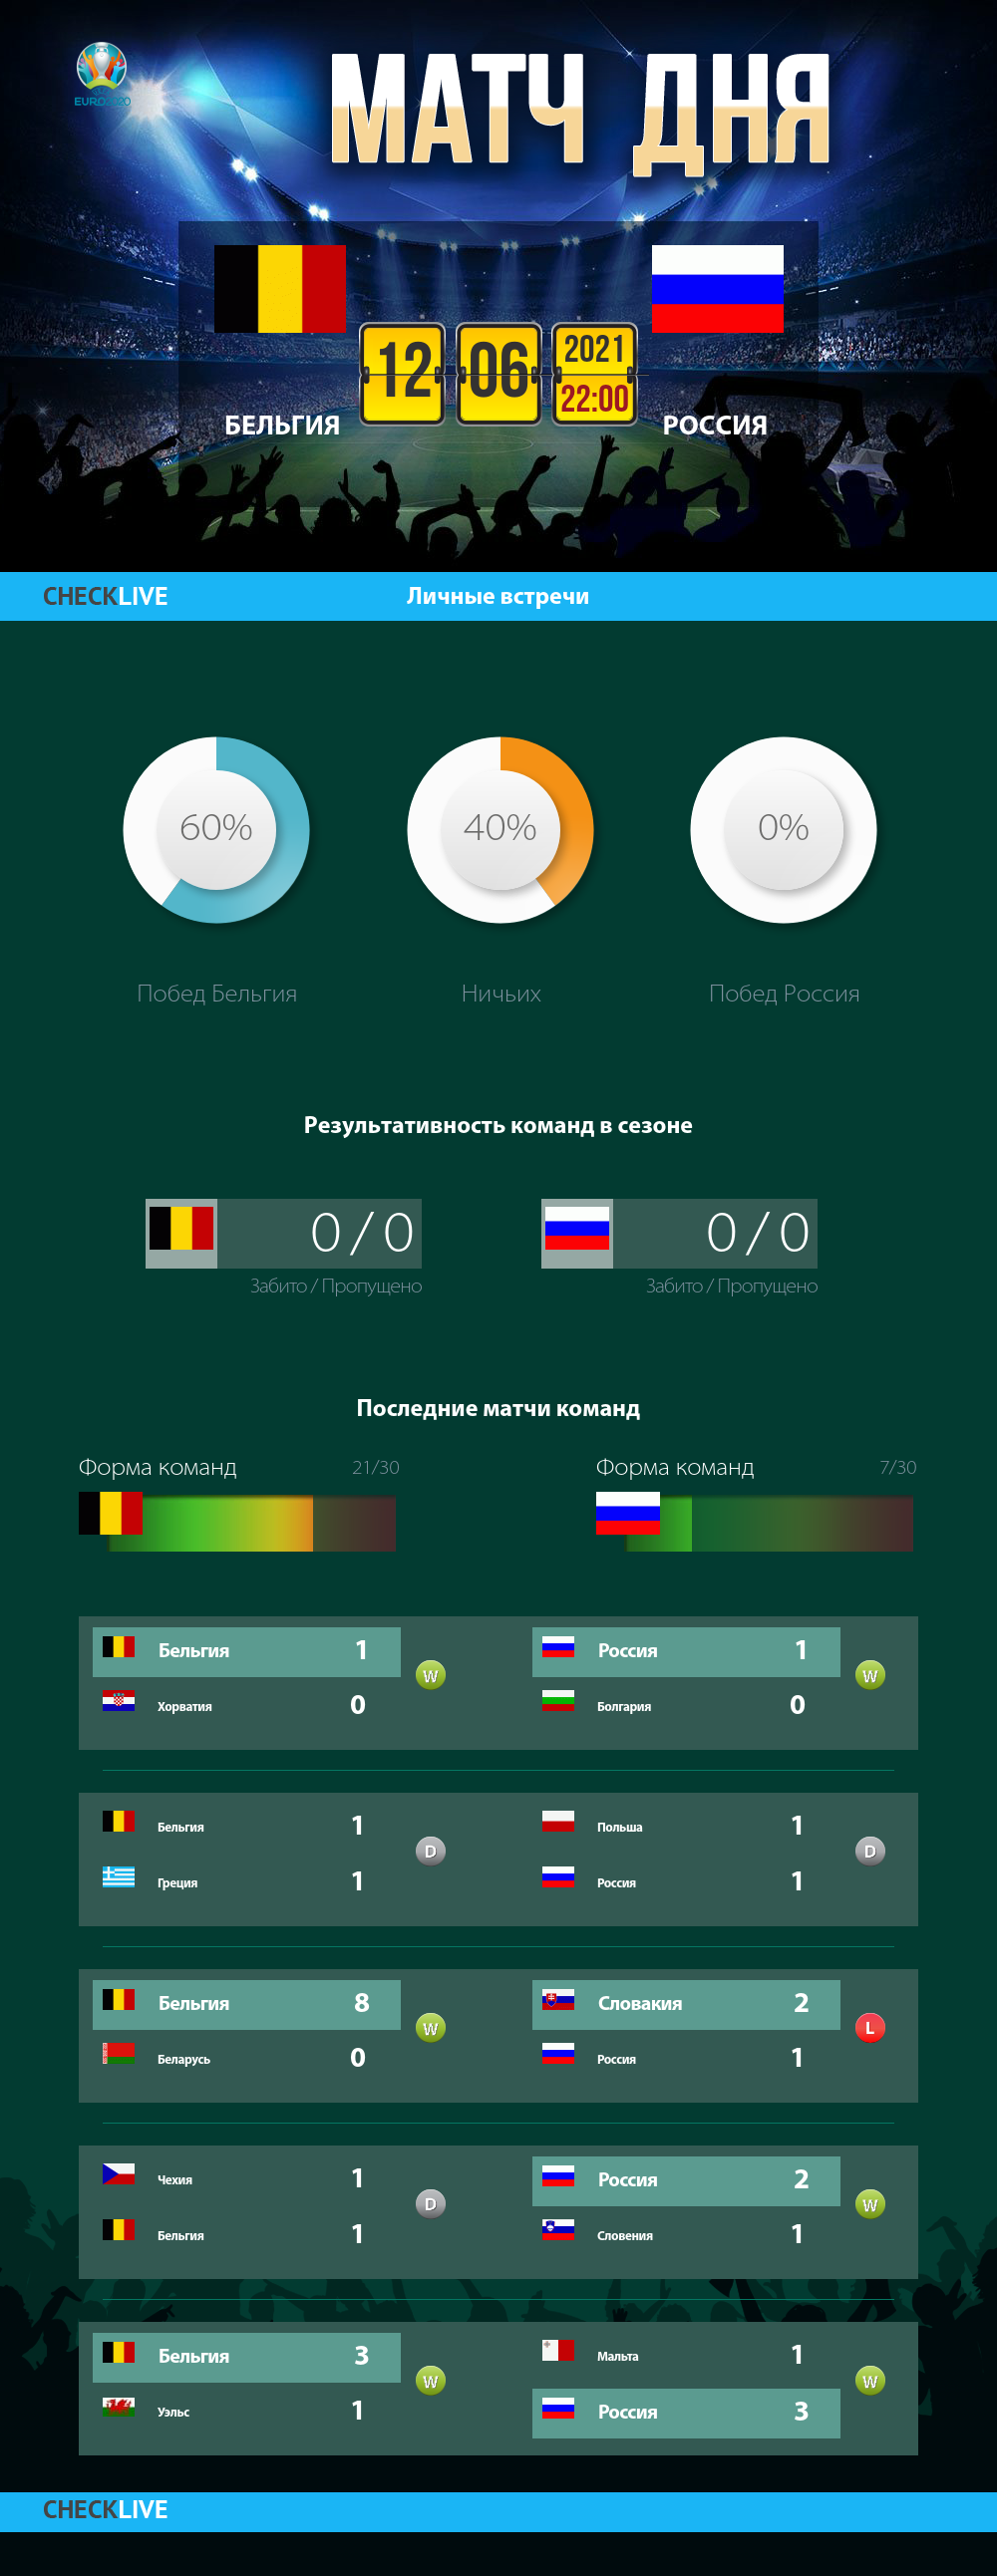 Инфографика Бельгия и Россия матч дня 12.06.2021